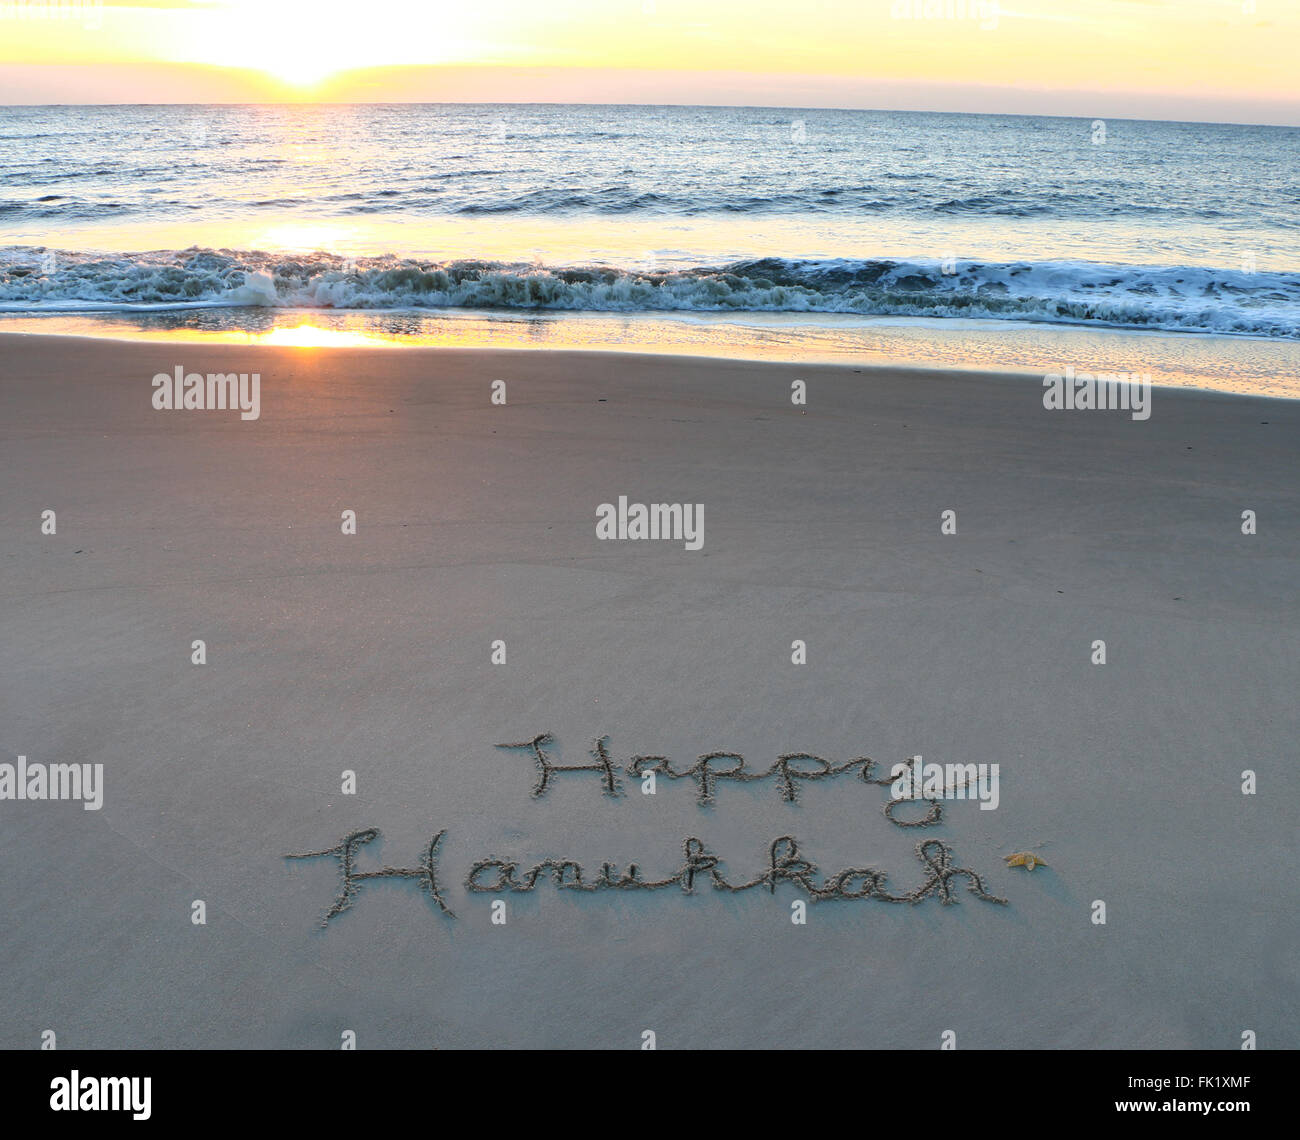 Happy Hanukkah scritto nella sabbia sulla spiaggia Foto Stock